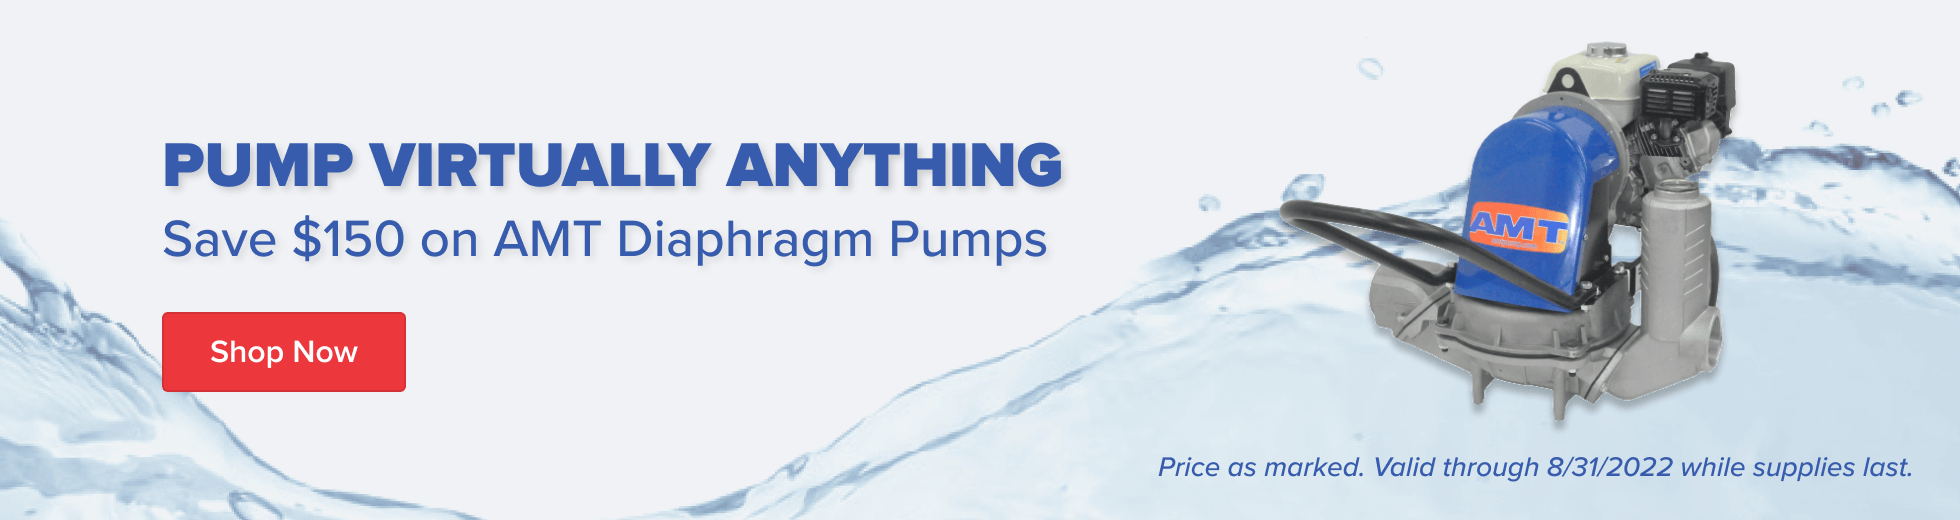 Save $150 on AMT Diaphragm Pumps